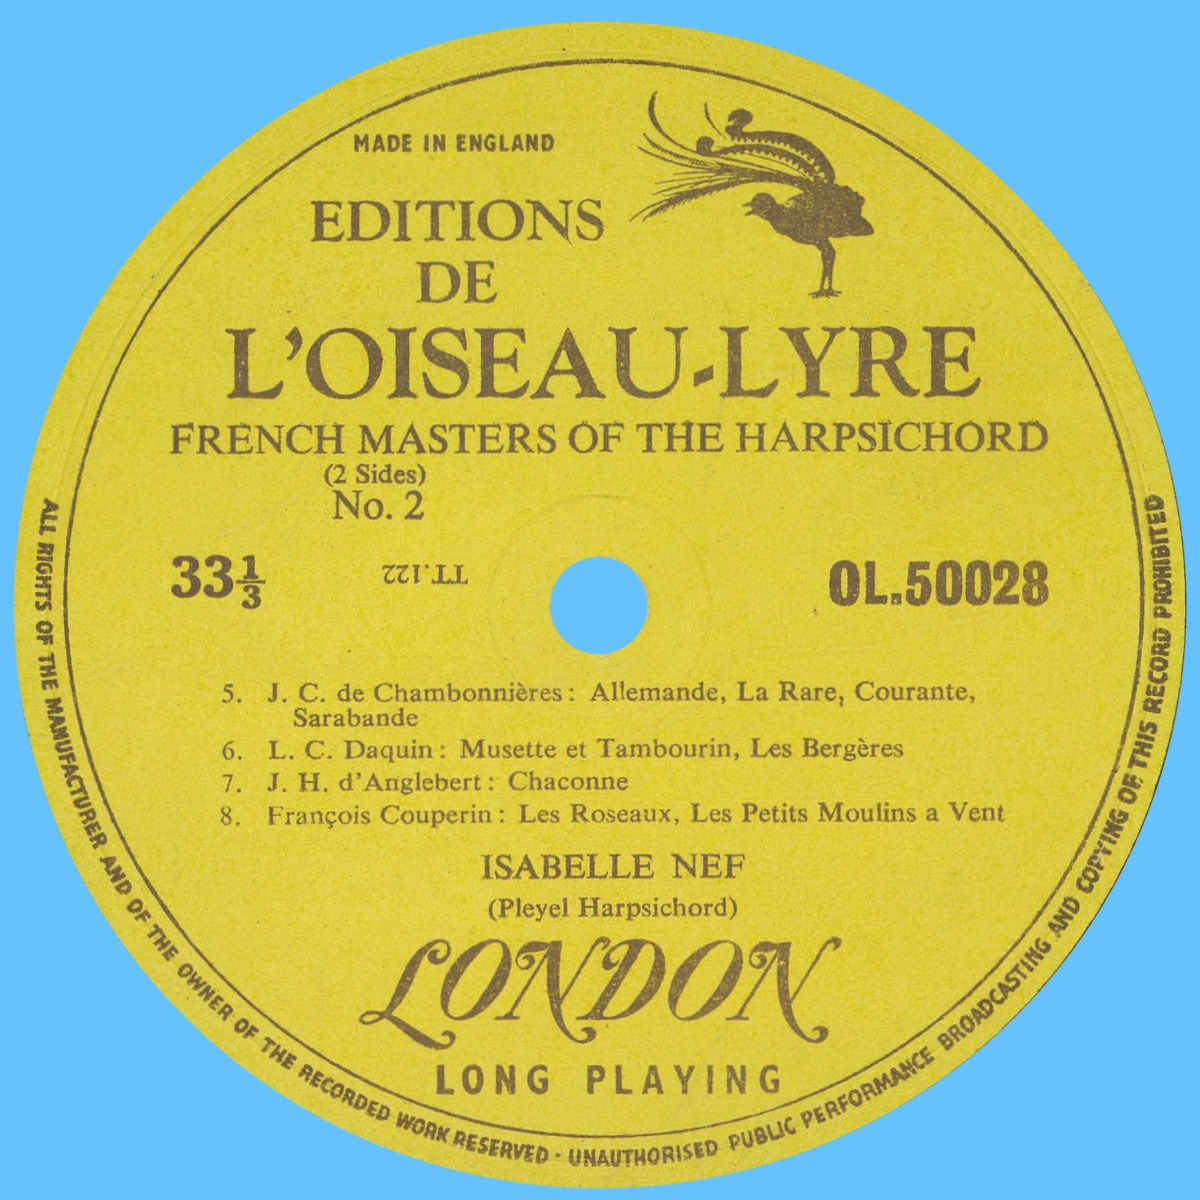 Étiquette verso du disque LONDON Éditions de l'Oiseau-Lyre OL 50028